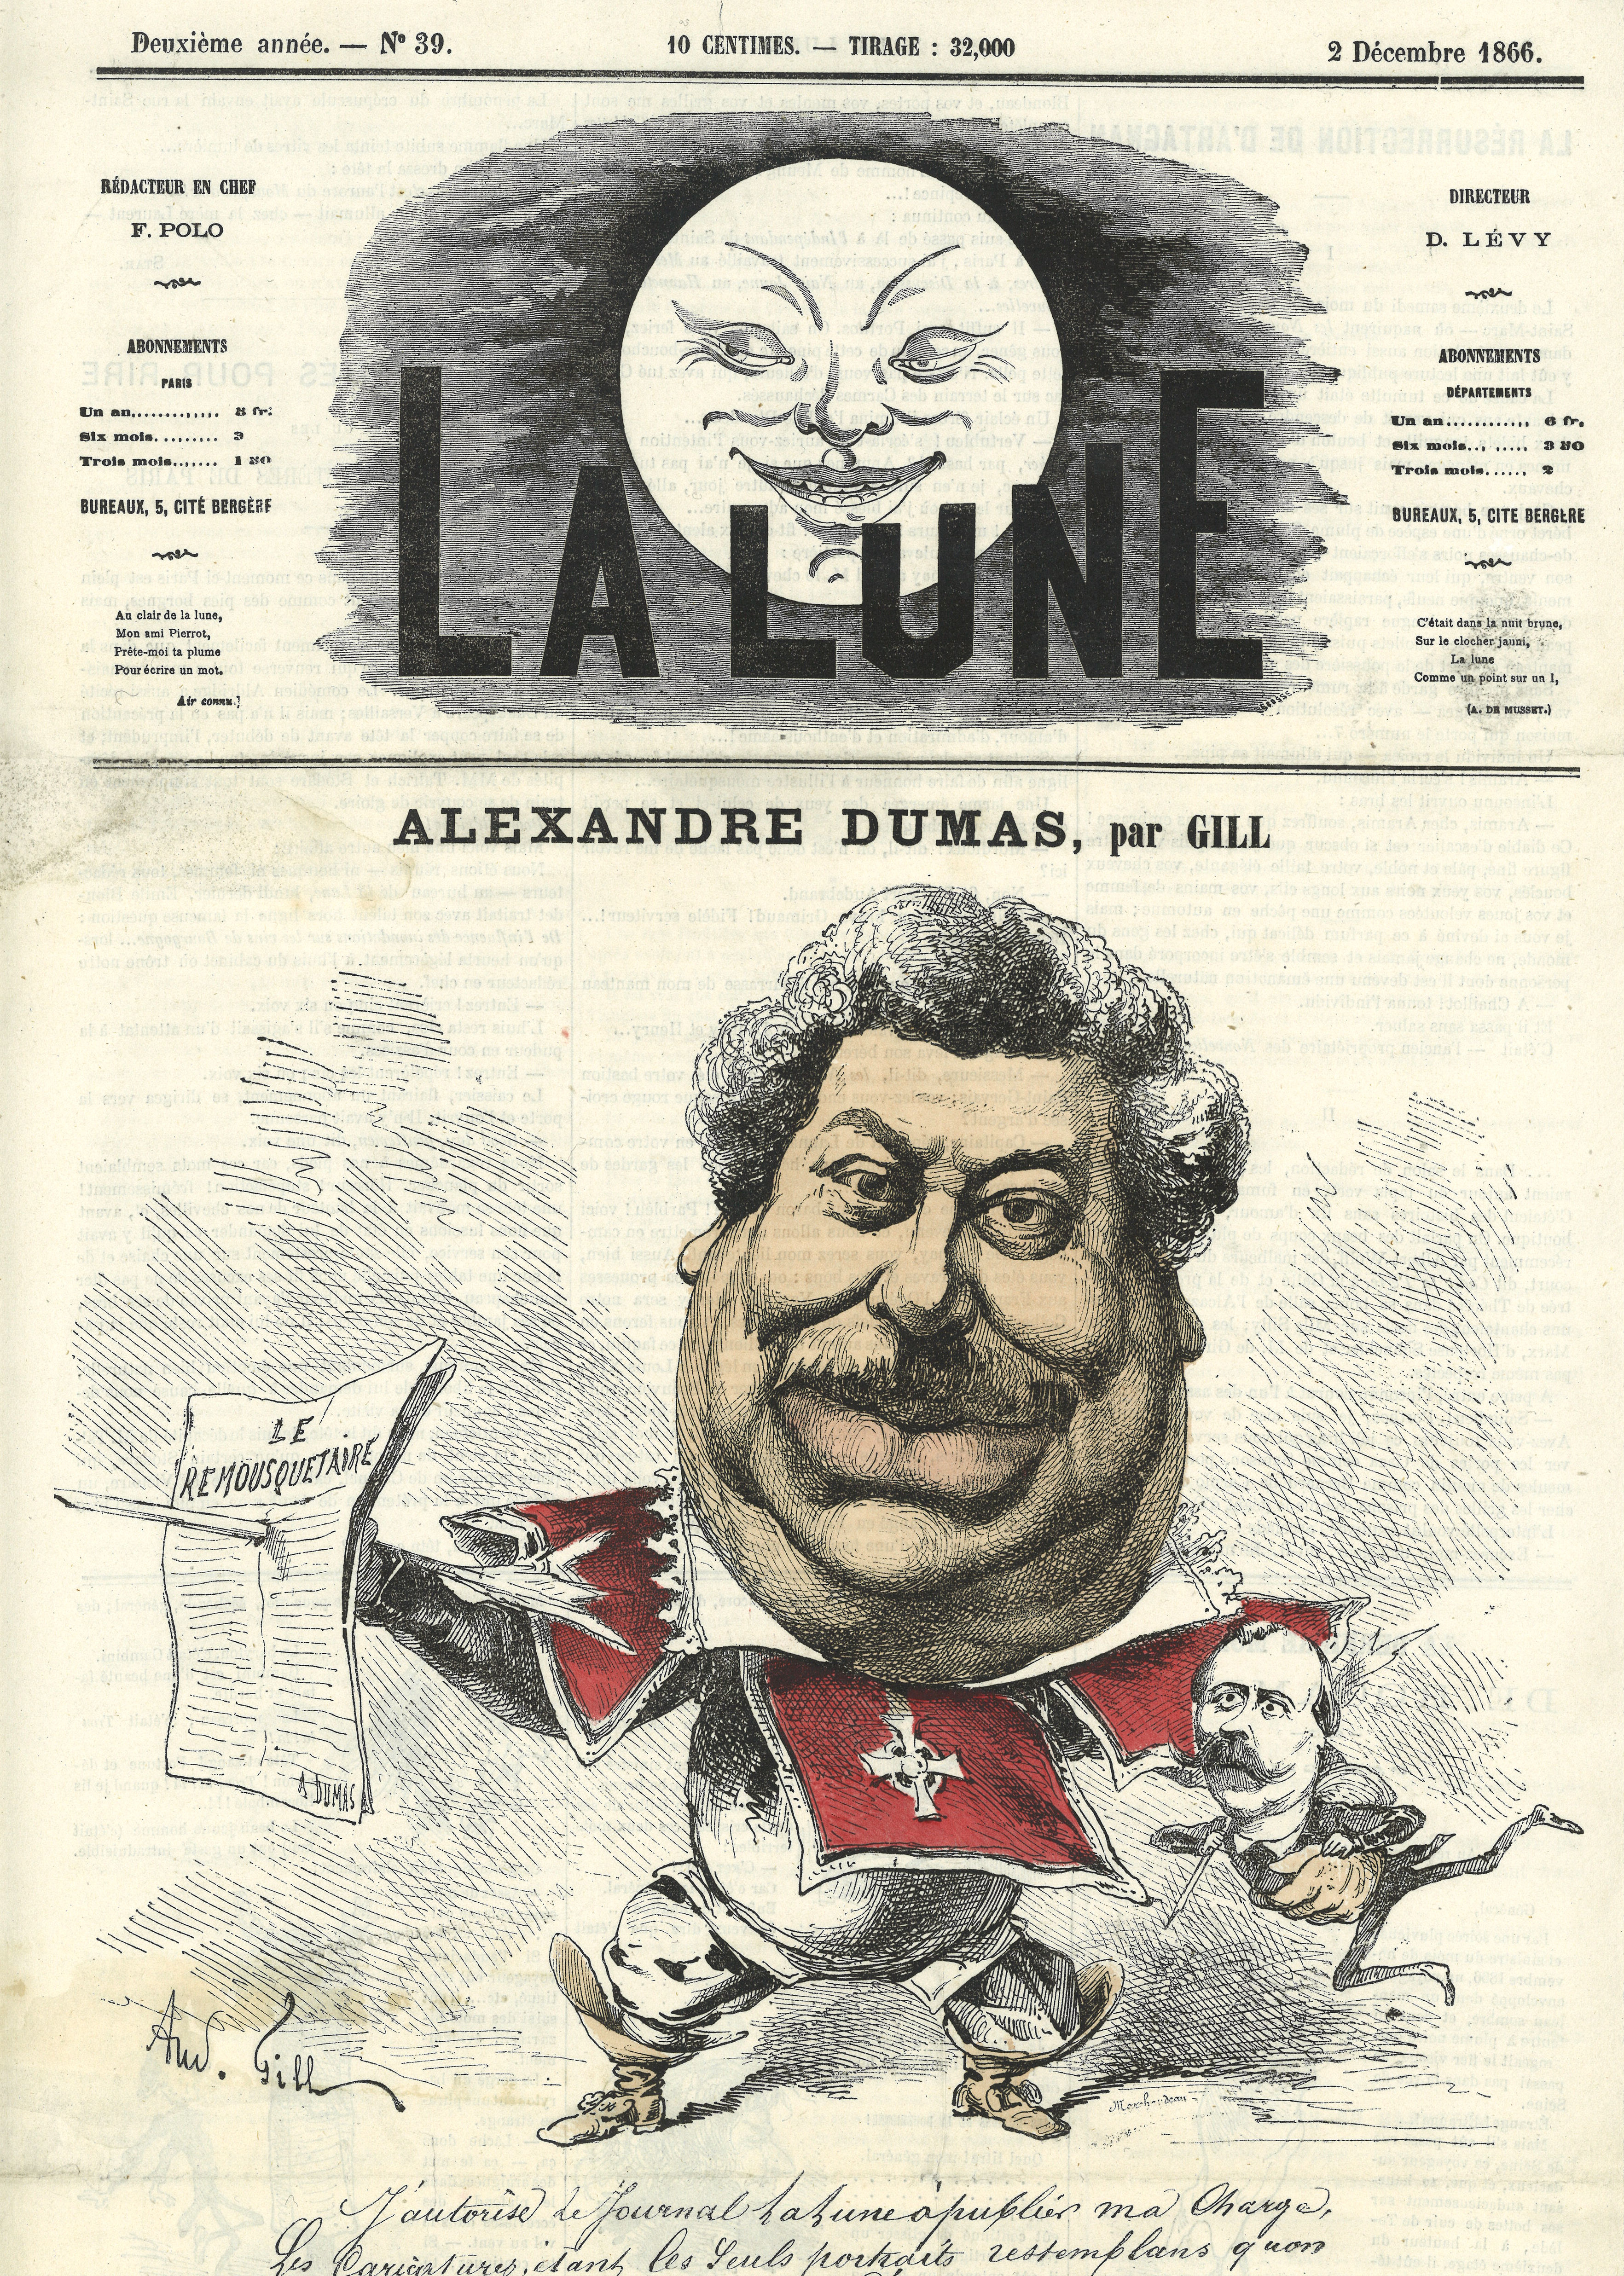 02-alexandre-dumas-caricature-par-gill-dans-la-lune-n-macr-39-1866